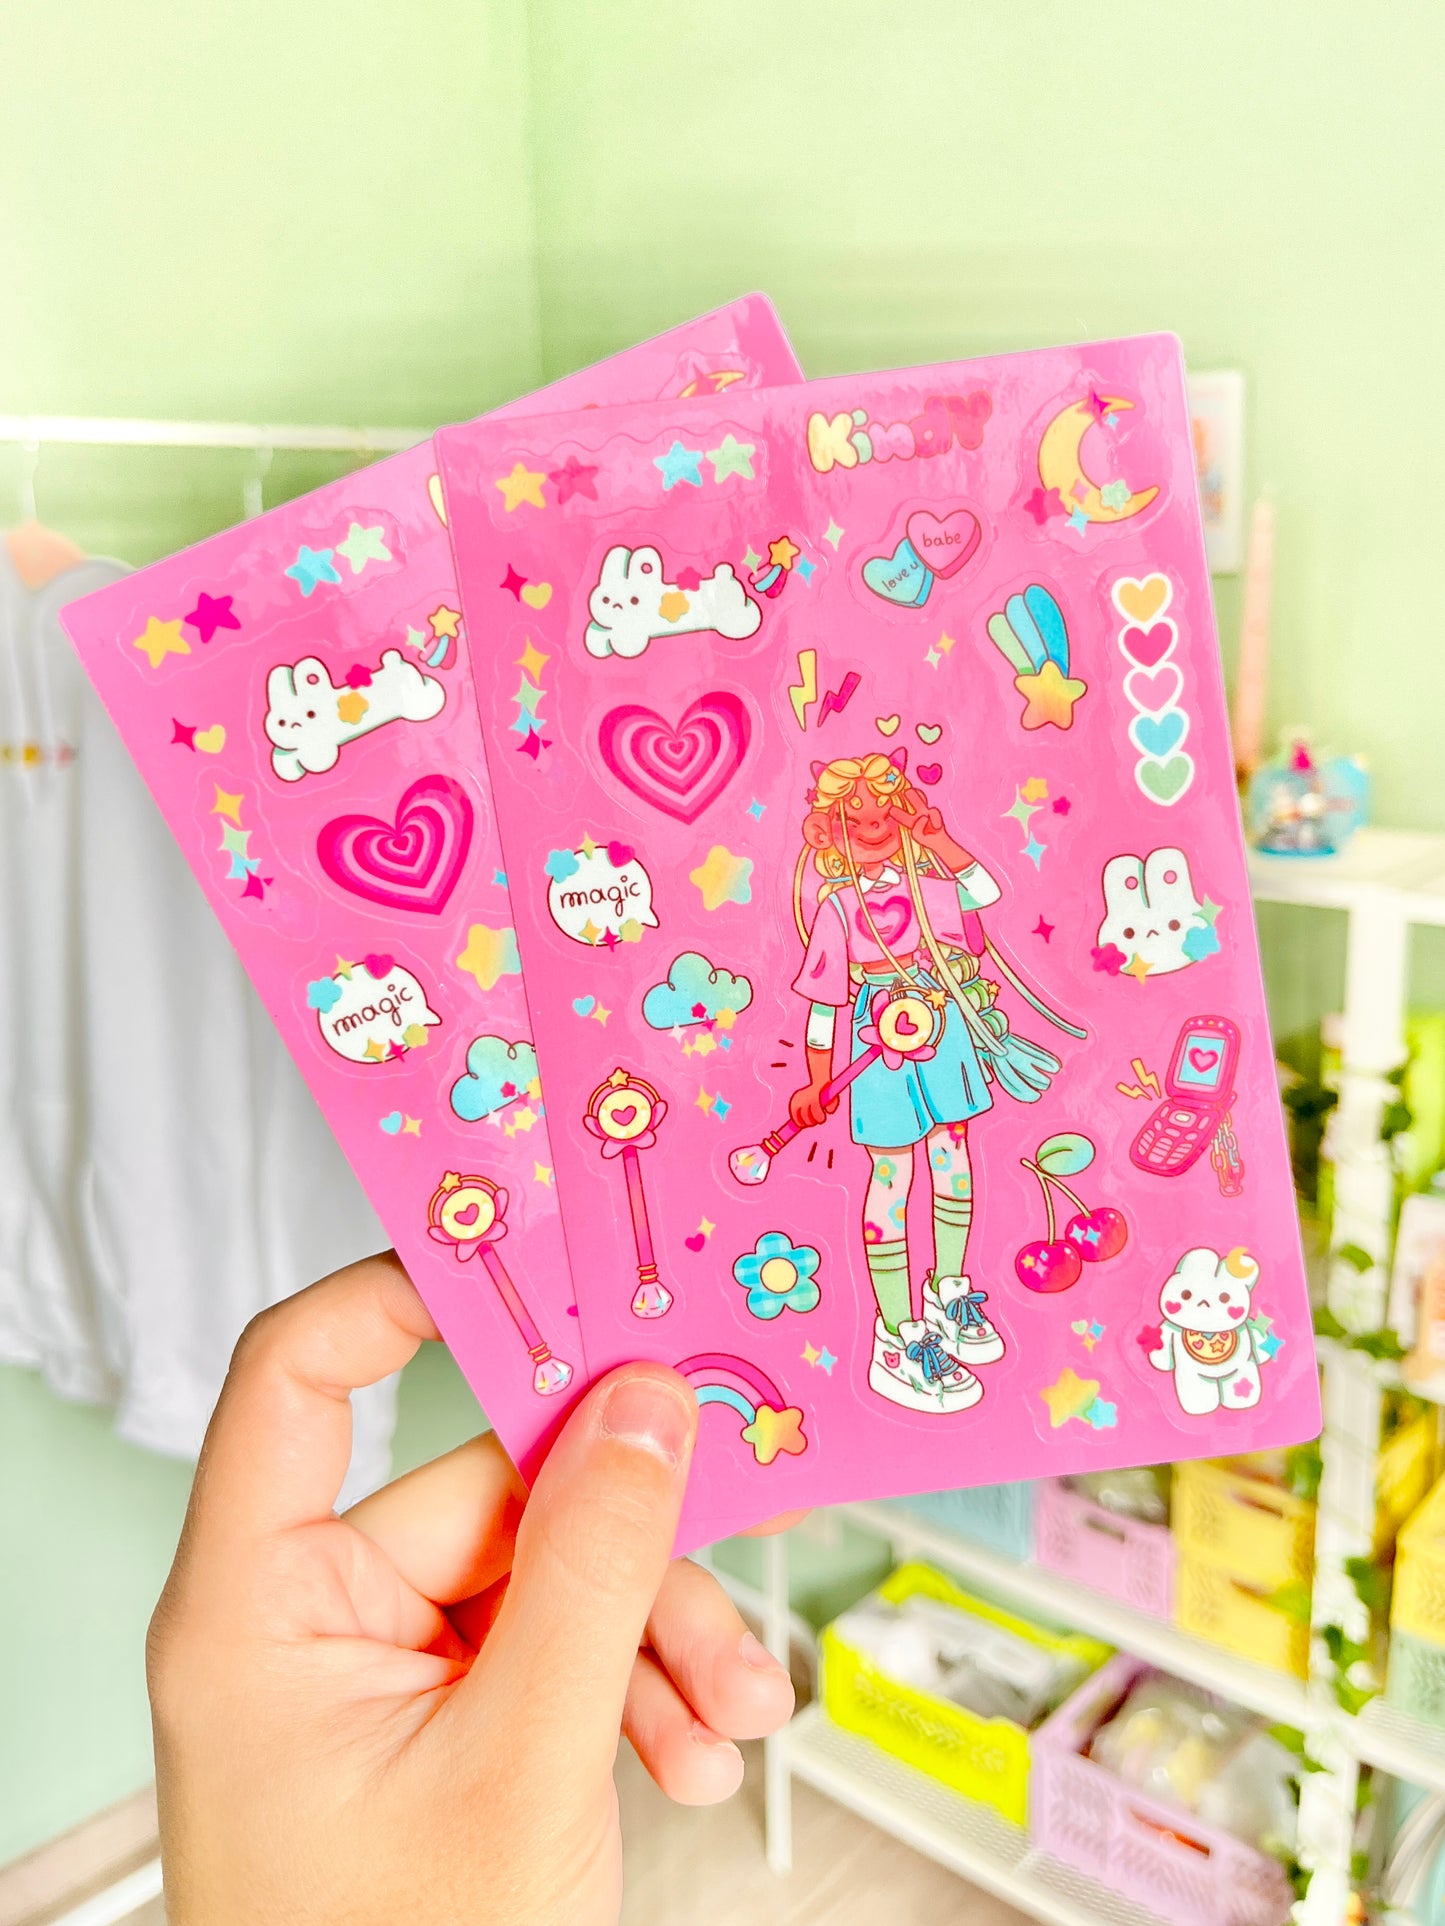 Magical Girl - Sticker sheet